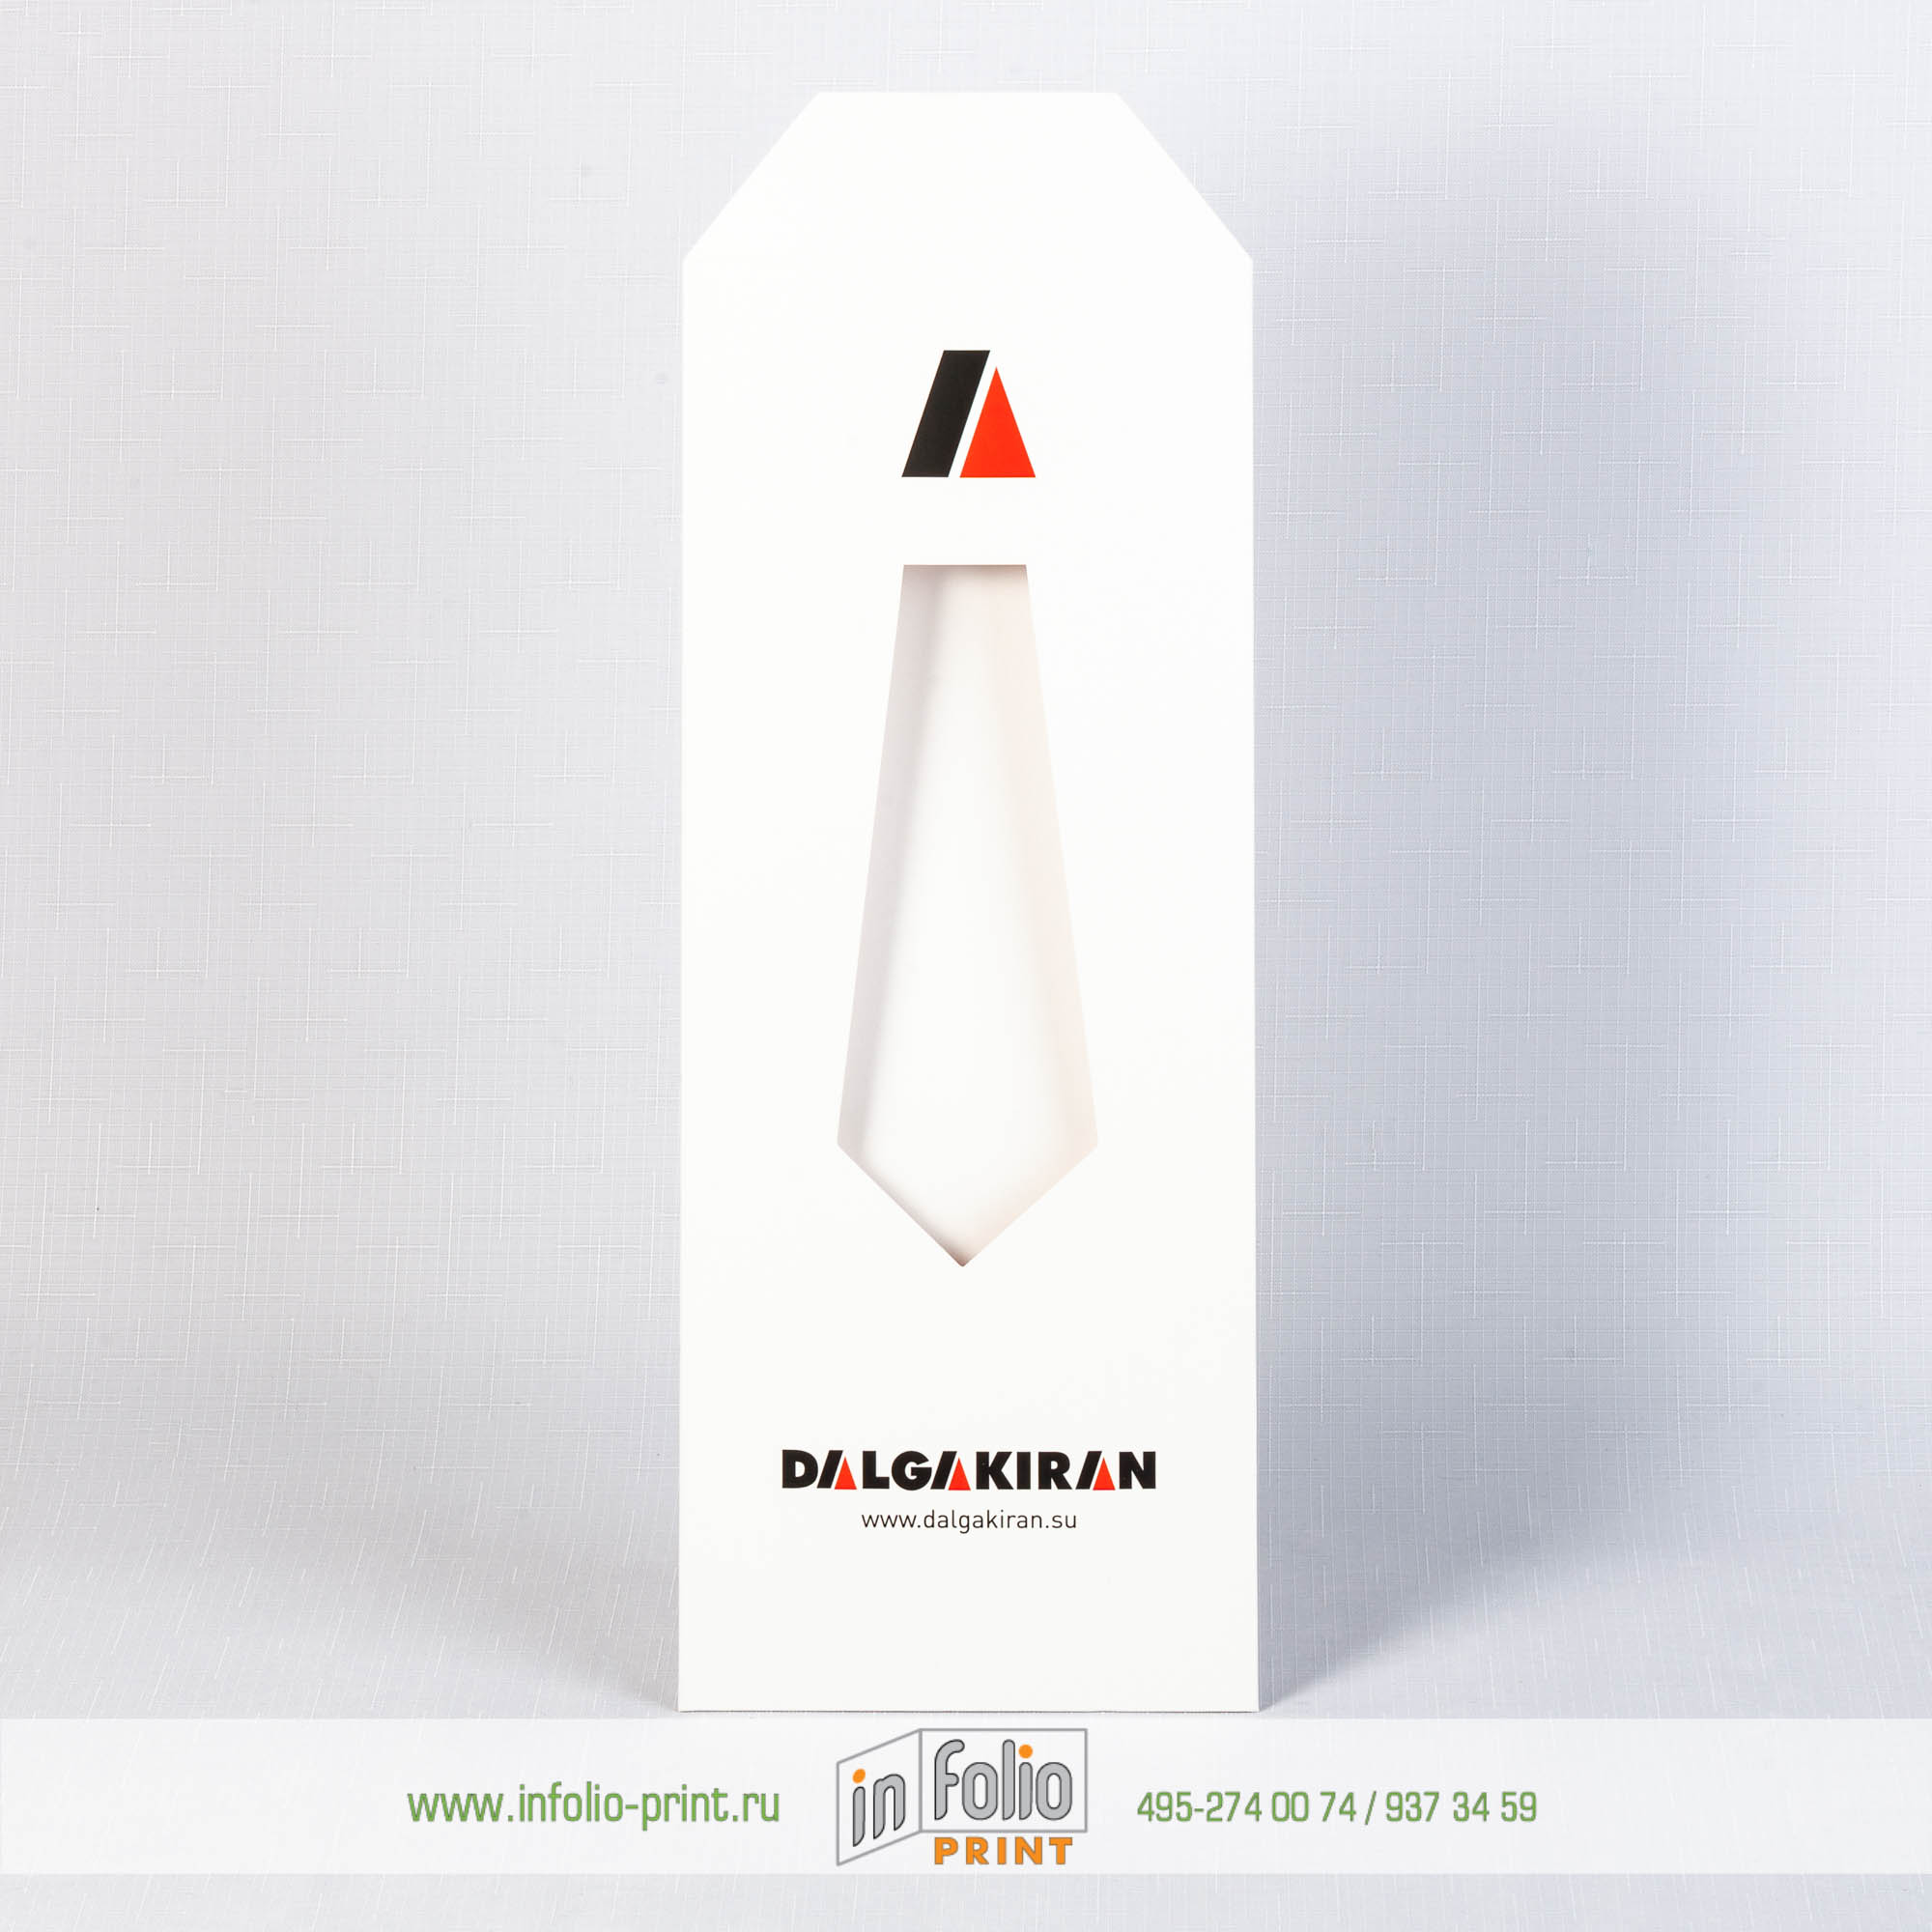 Упакова для галстука с логотипом